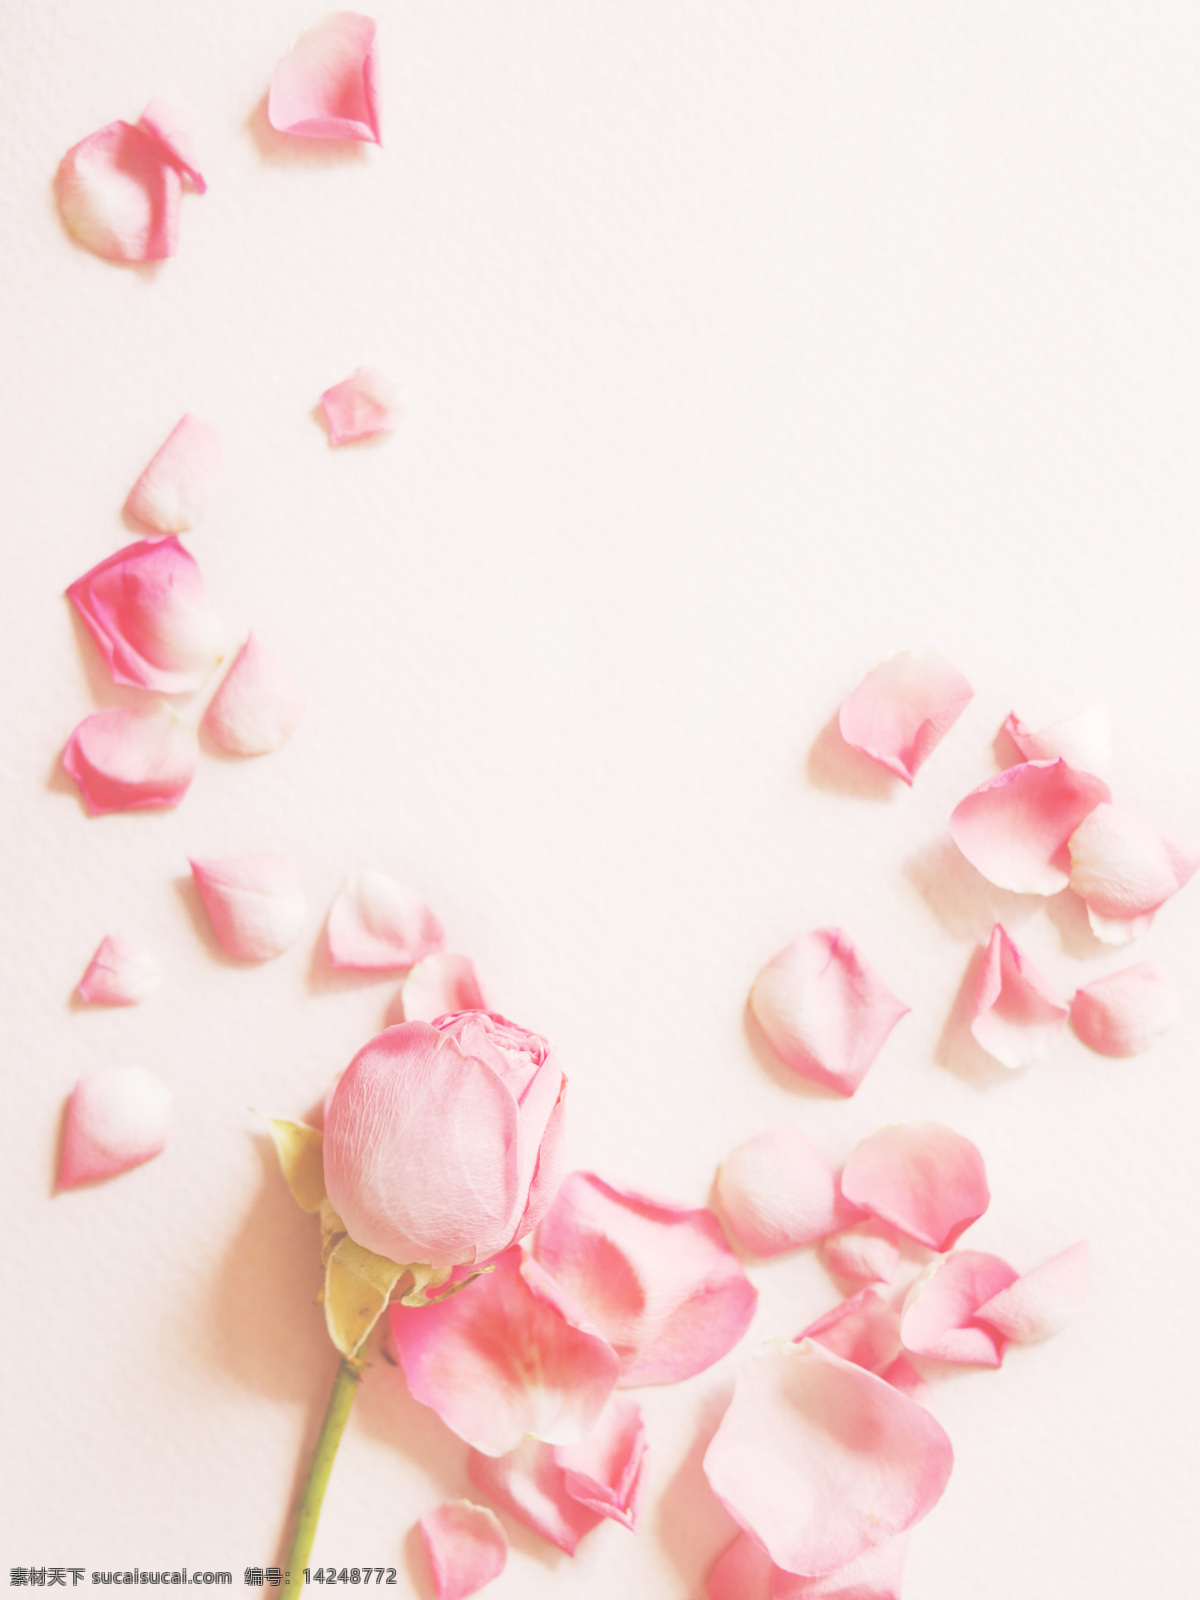 粉色 玫瑰 花瓣 花卉 花 新鲜 七夕 情人节 玫瑰花 粉色玫瑰 浪漫花卉 生物世界 花草